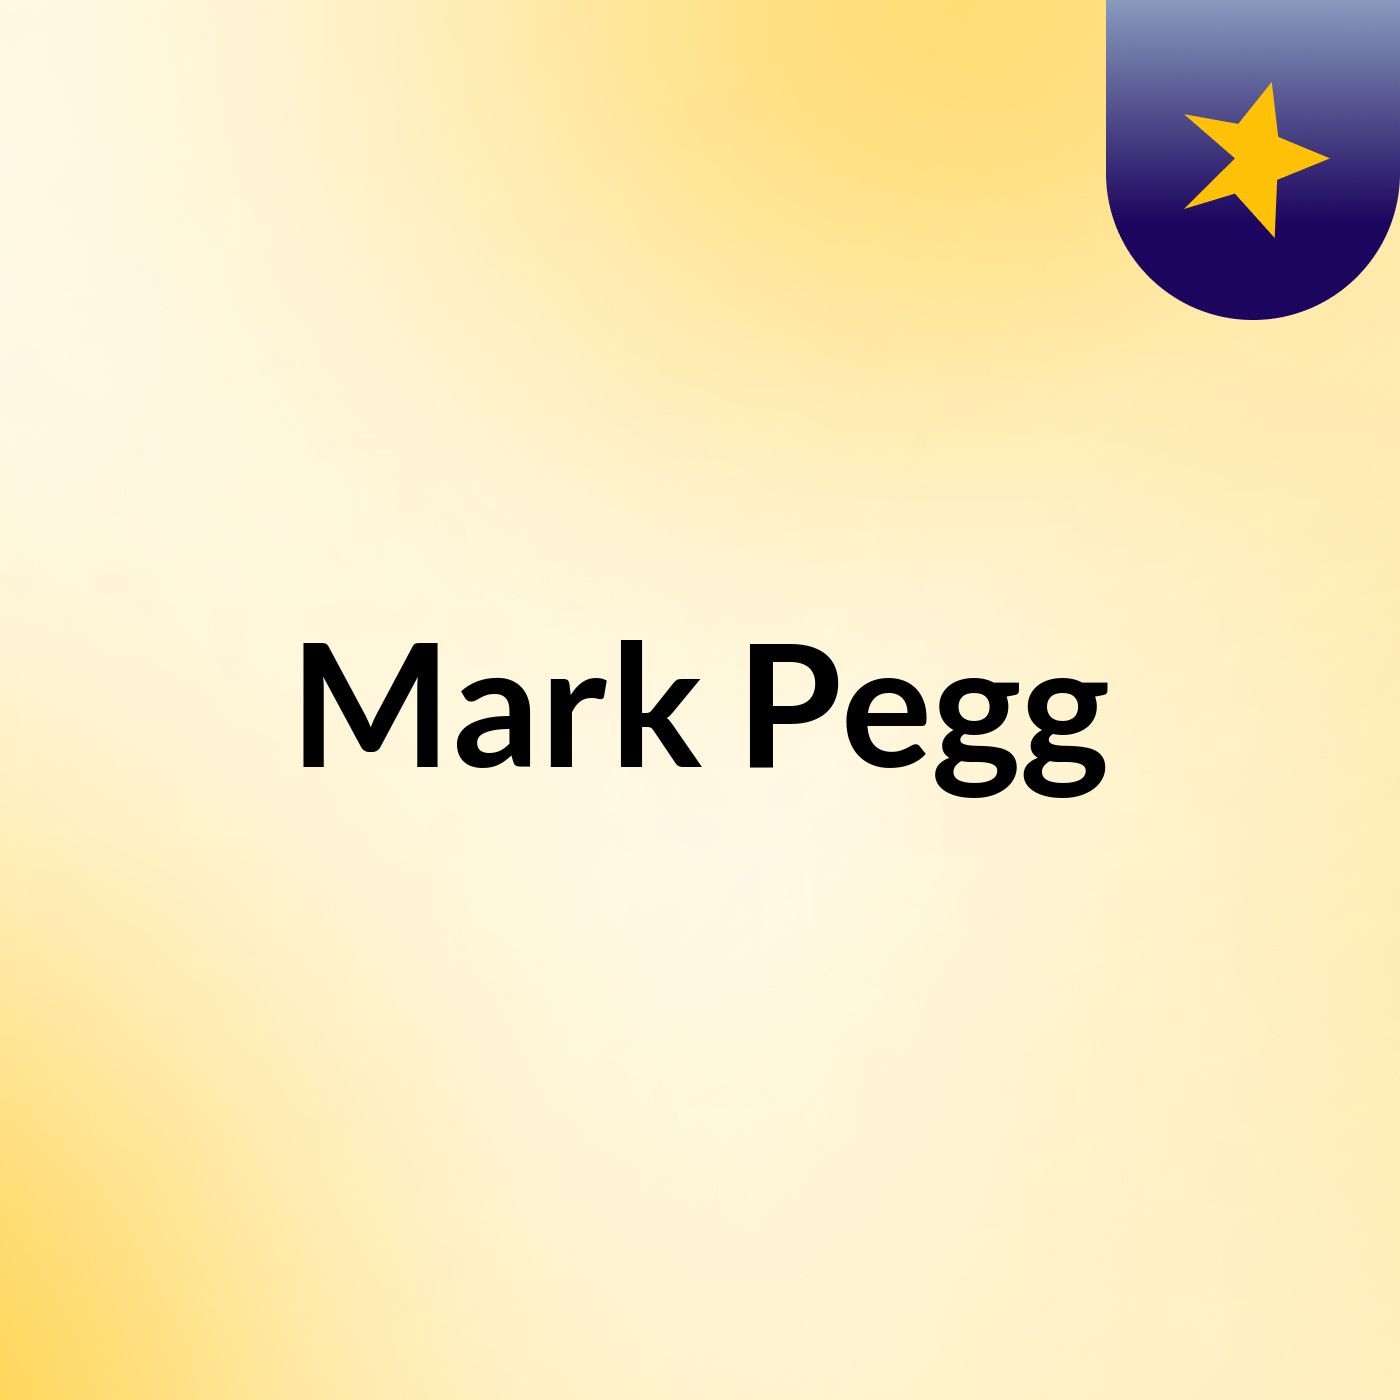 Mark Pegg